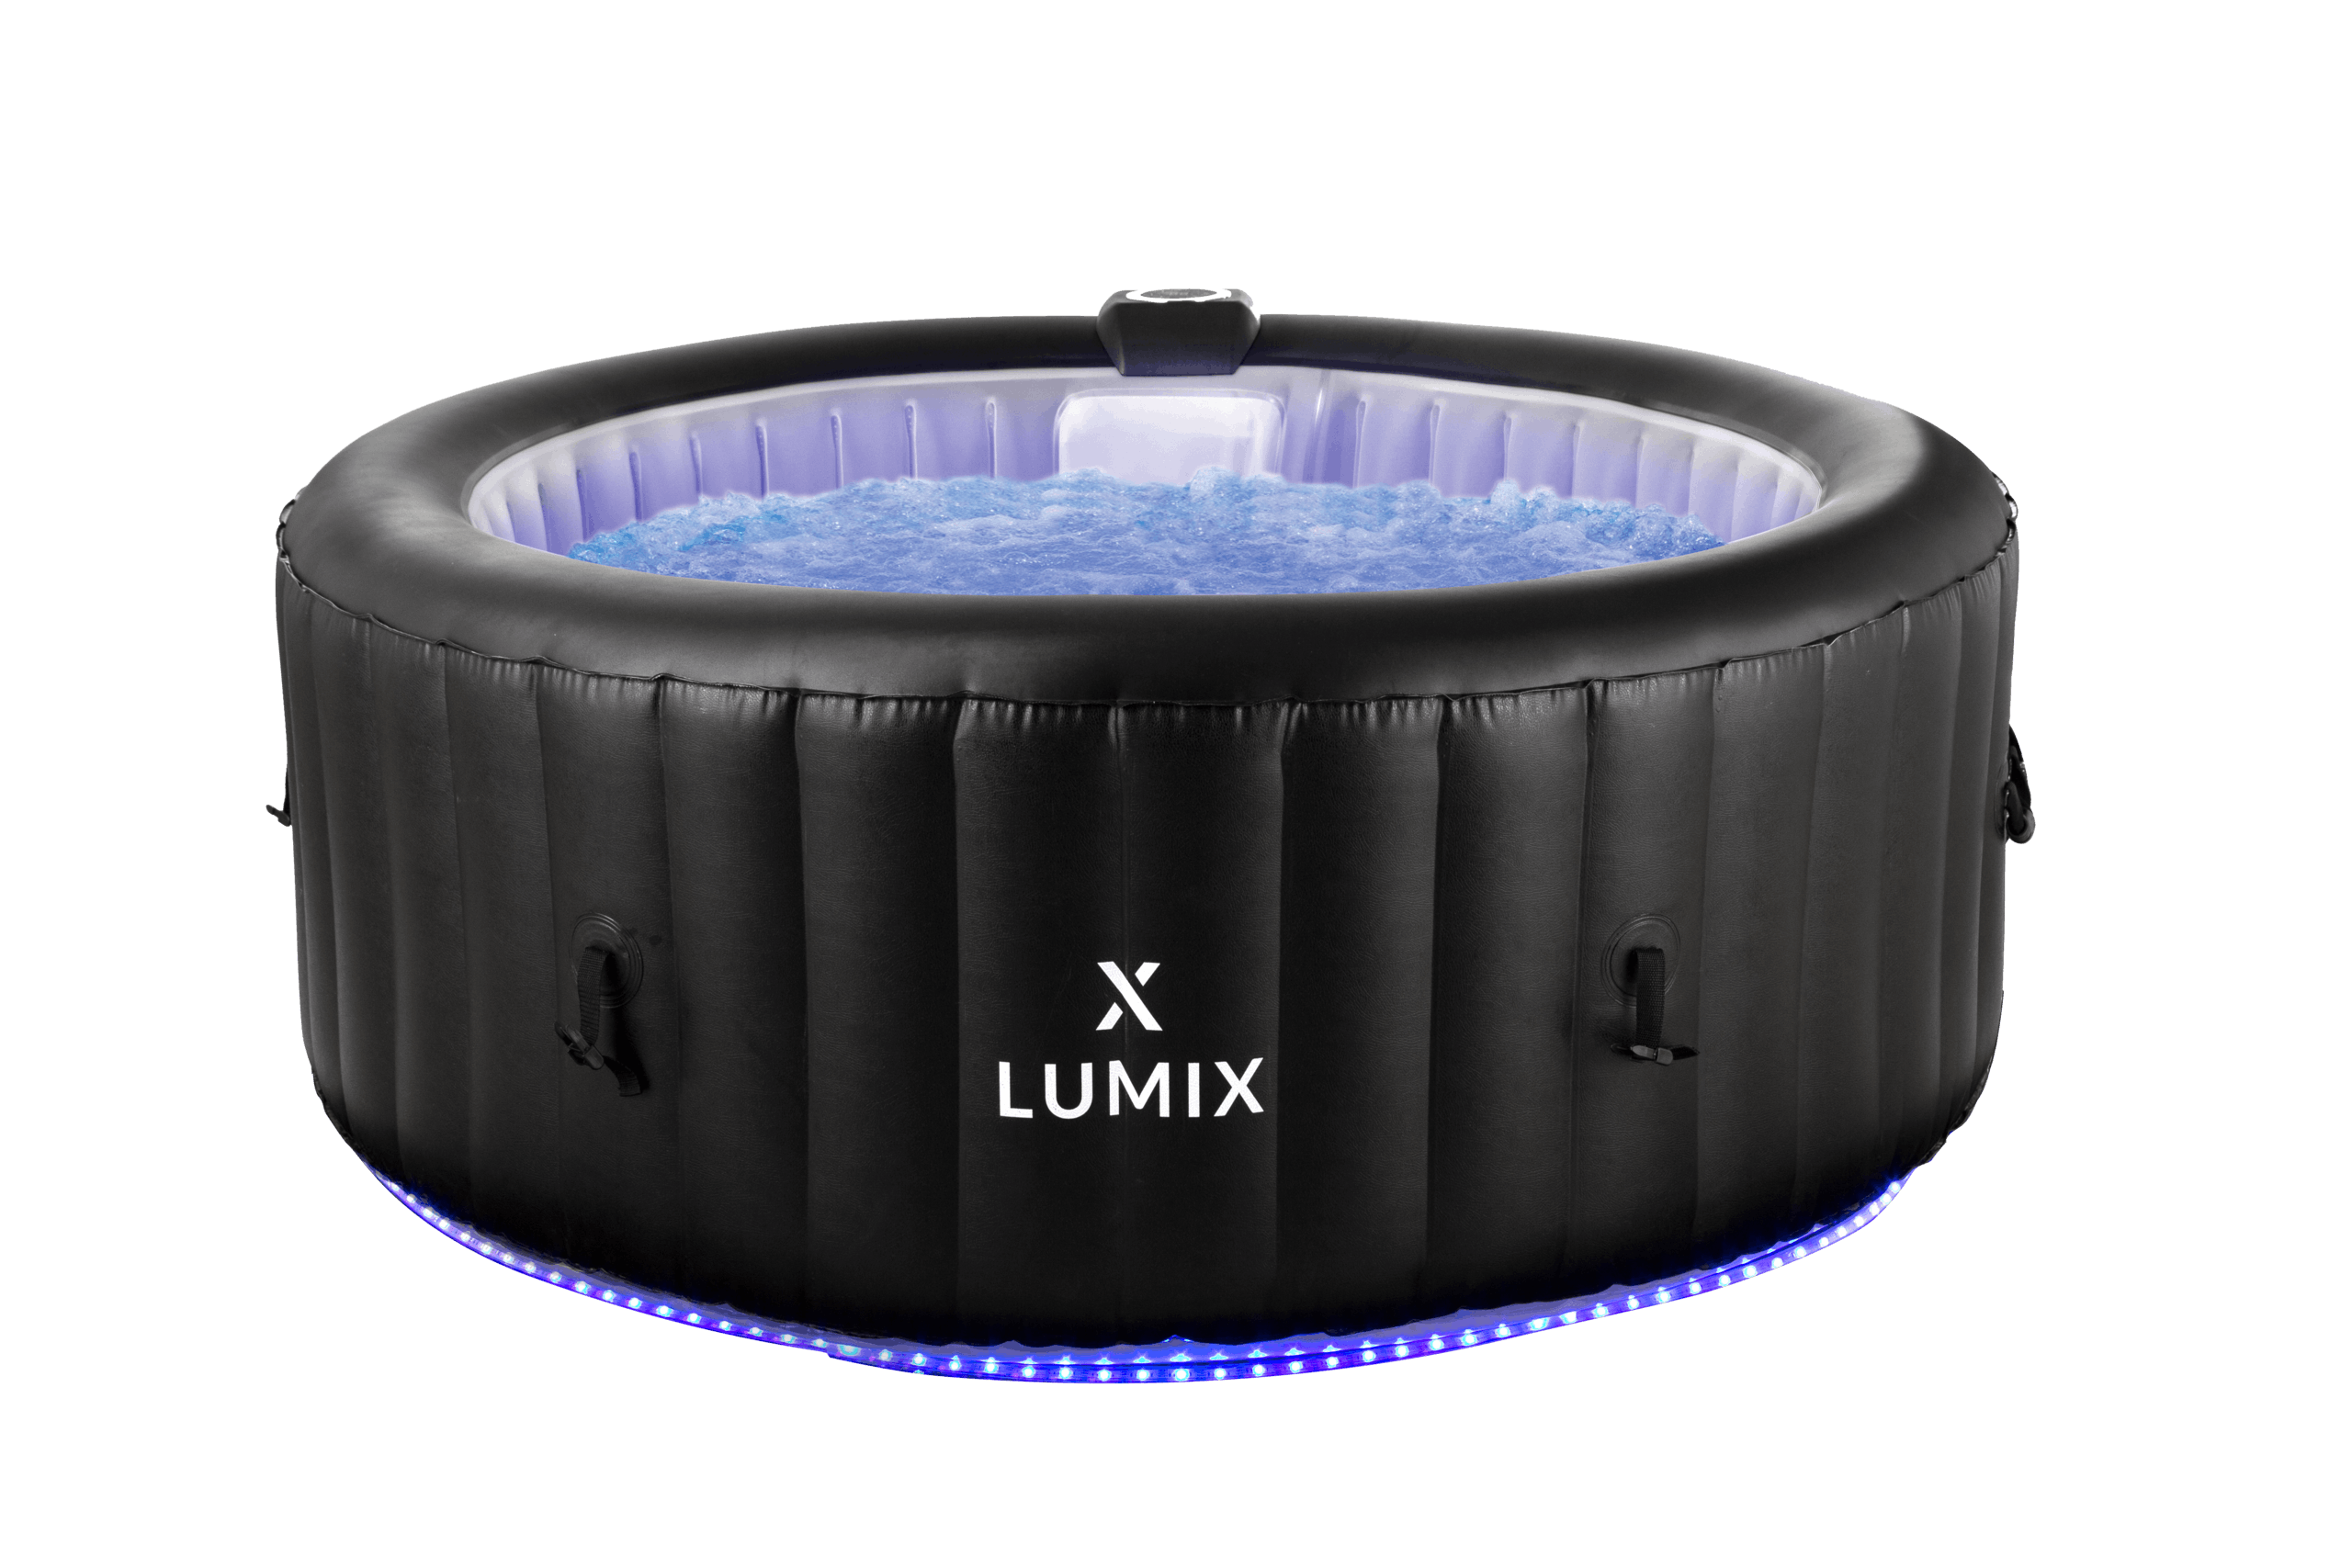 X-lumix Helene Spa Gonflable Led Pour 6 Personnes - Noir